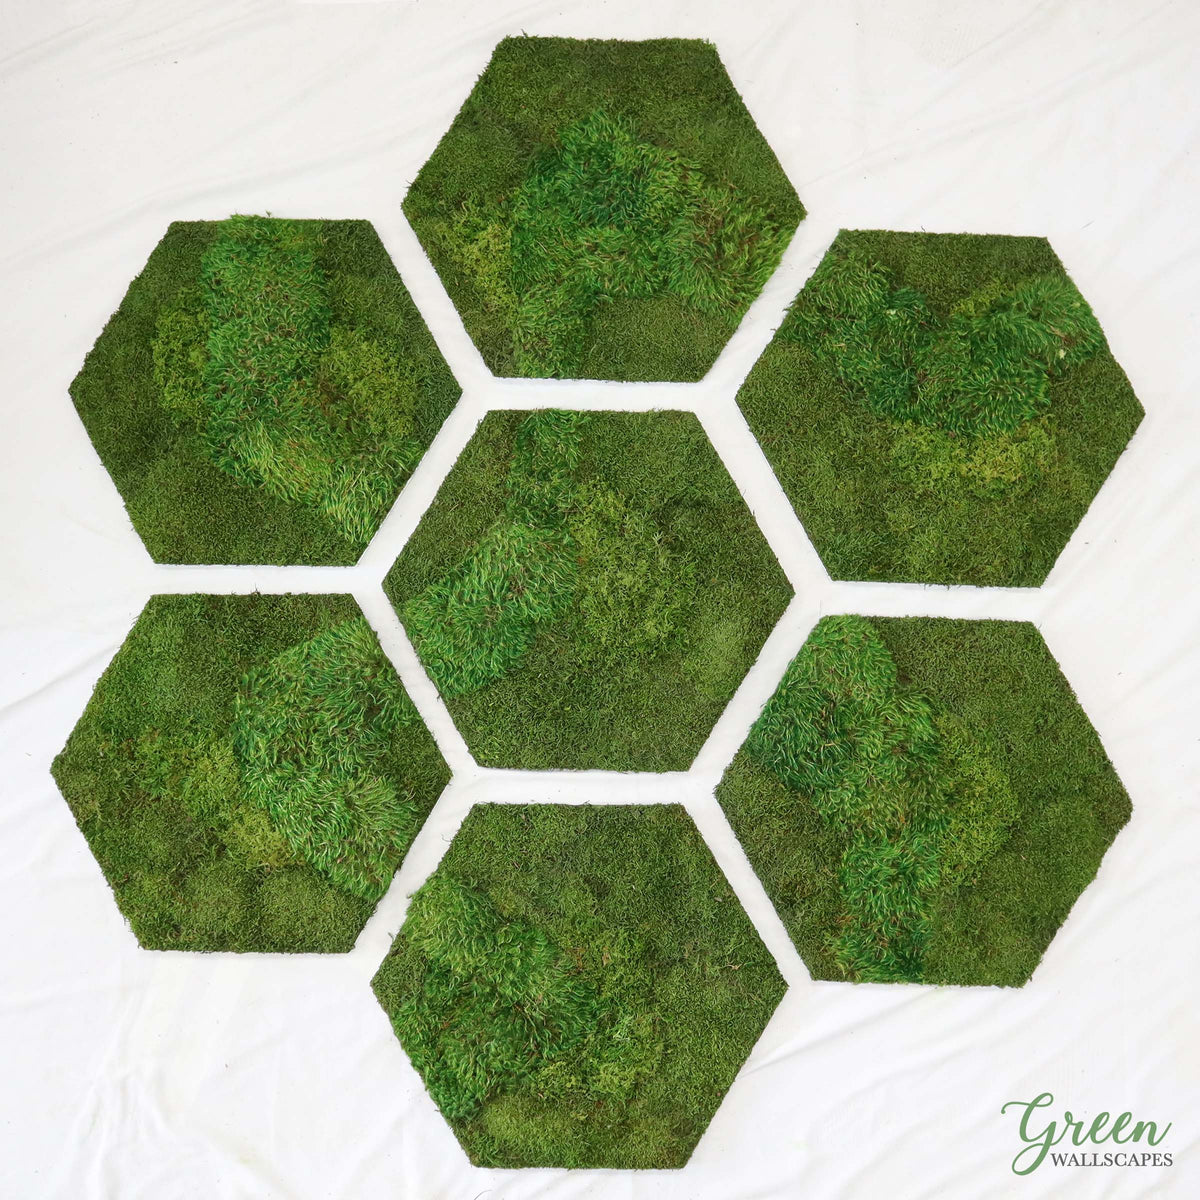 Moss Wall - Hexagon – GrowUp Greenwalls